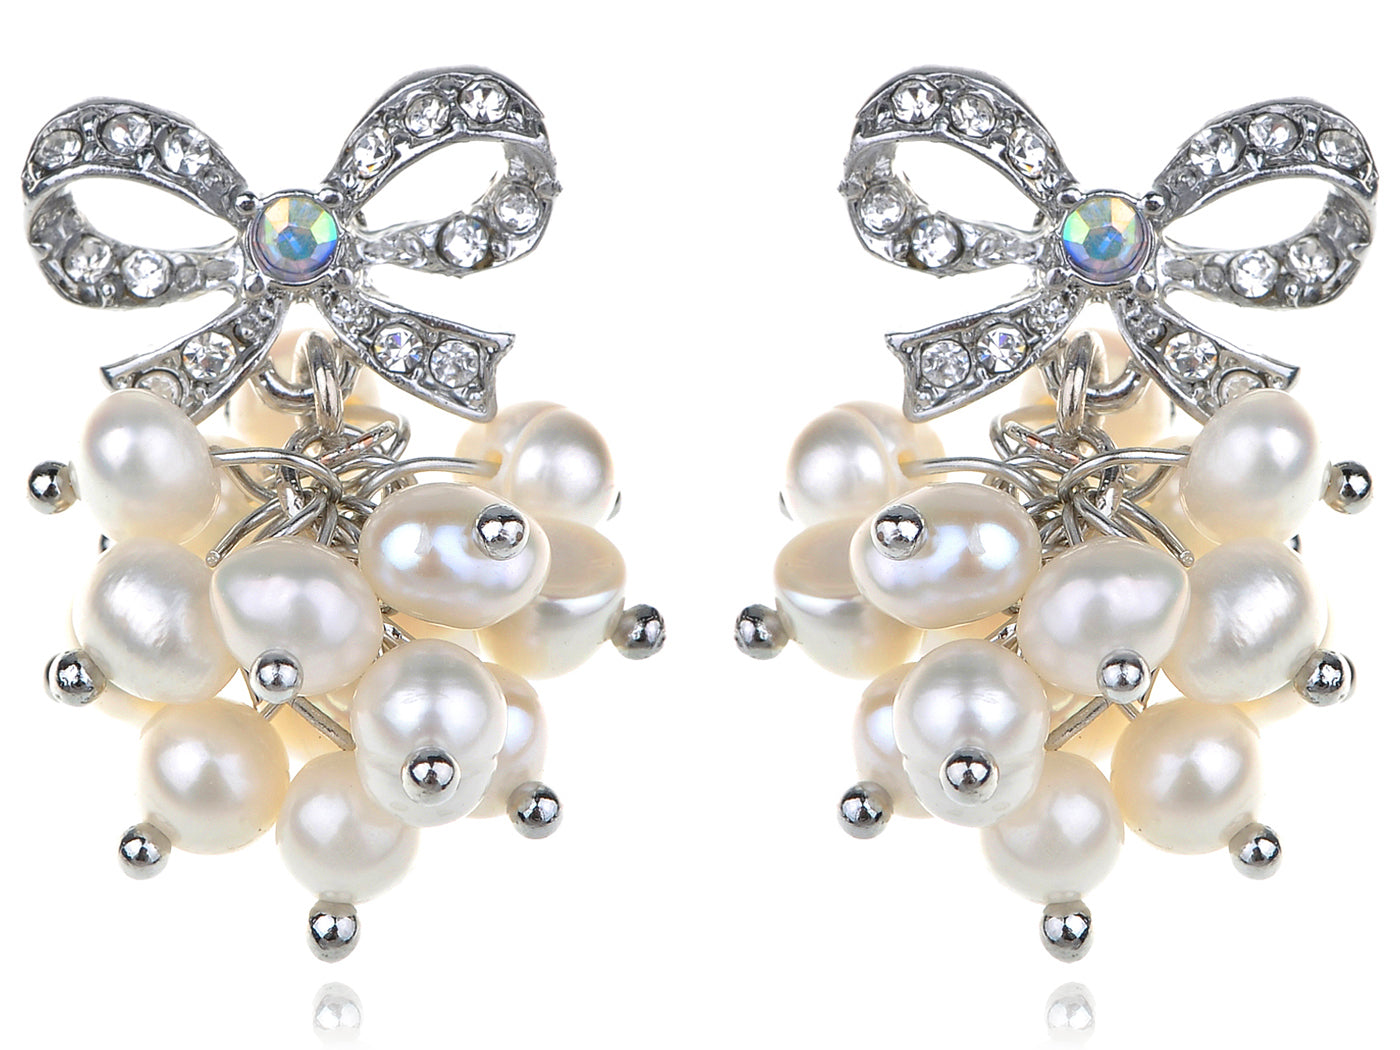 Petite Pearl Cluster Bow Pierced Earrings